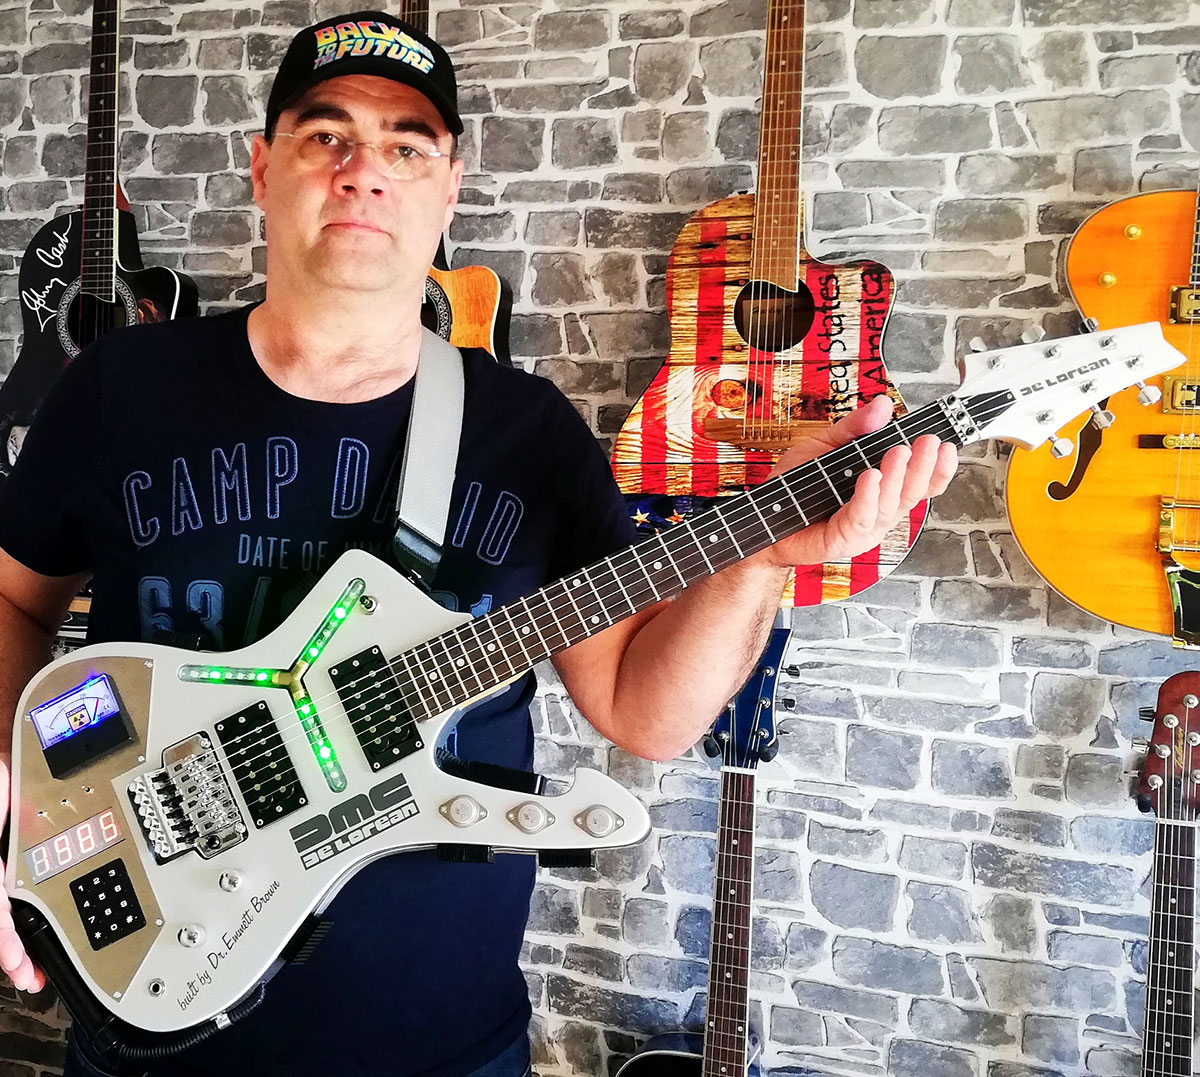 Thomas mit der von ihm umgebauten Gitarre im Back-to-the-Future-Design. Im Hintergrund sieht man weitere außergewöhnliche Gitarren an der Wand hängen.